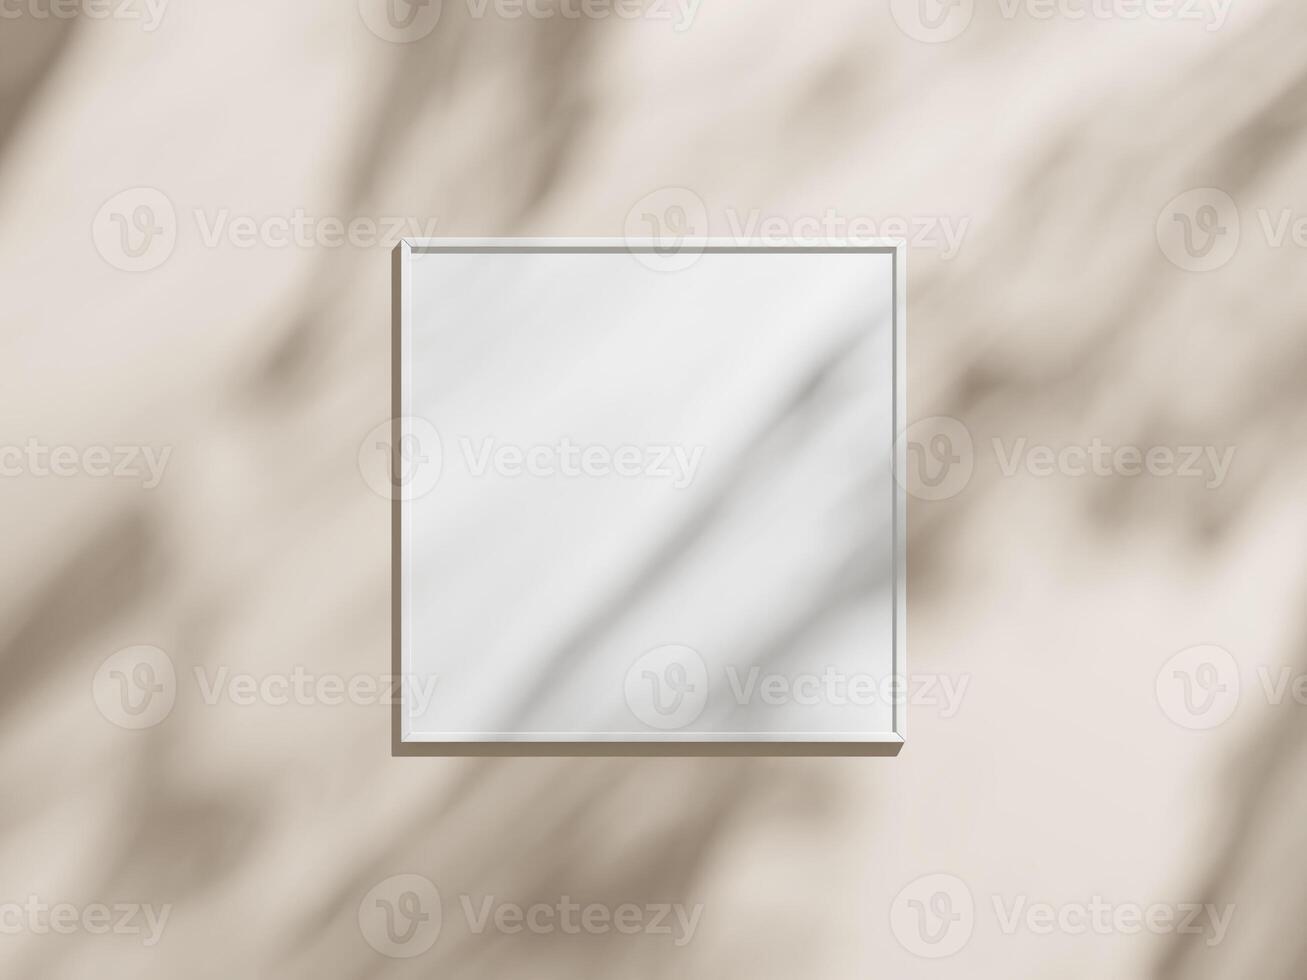 mínimo imagen póster marco Bosquejo en marrón fondo de pantalla foto